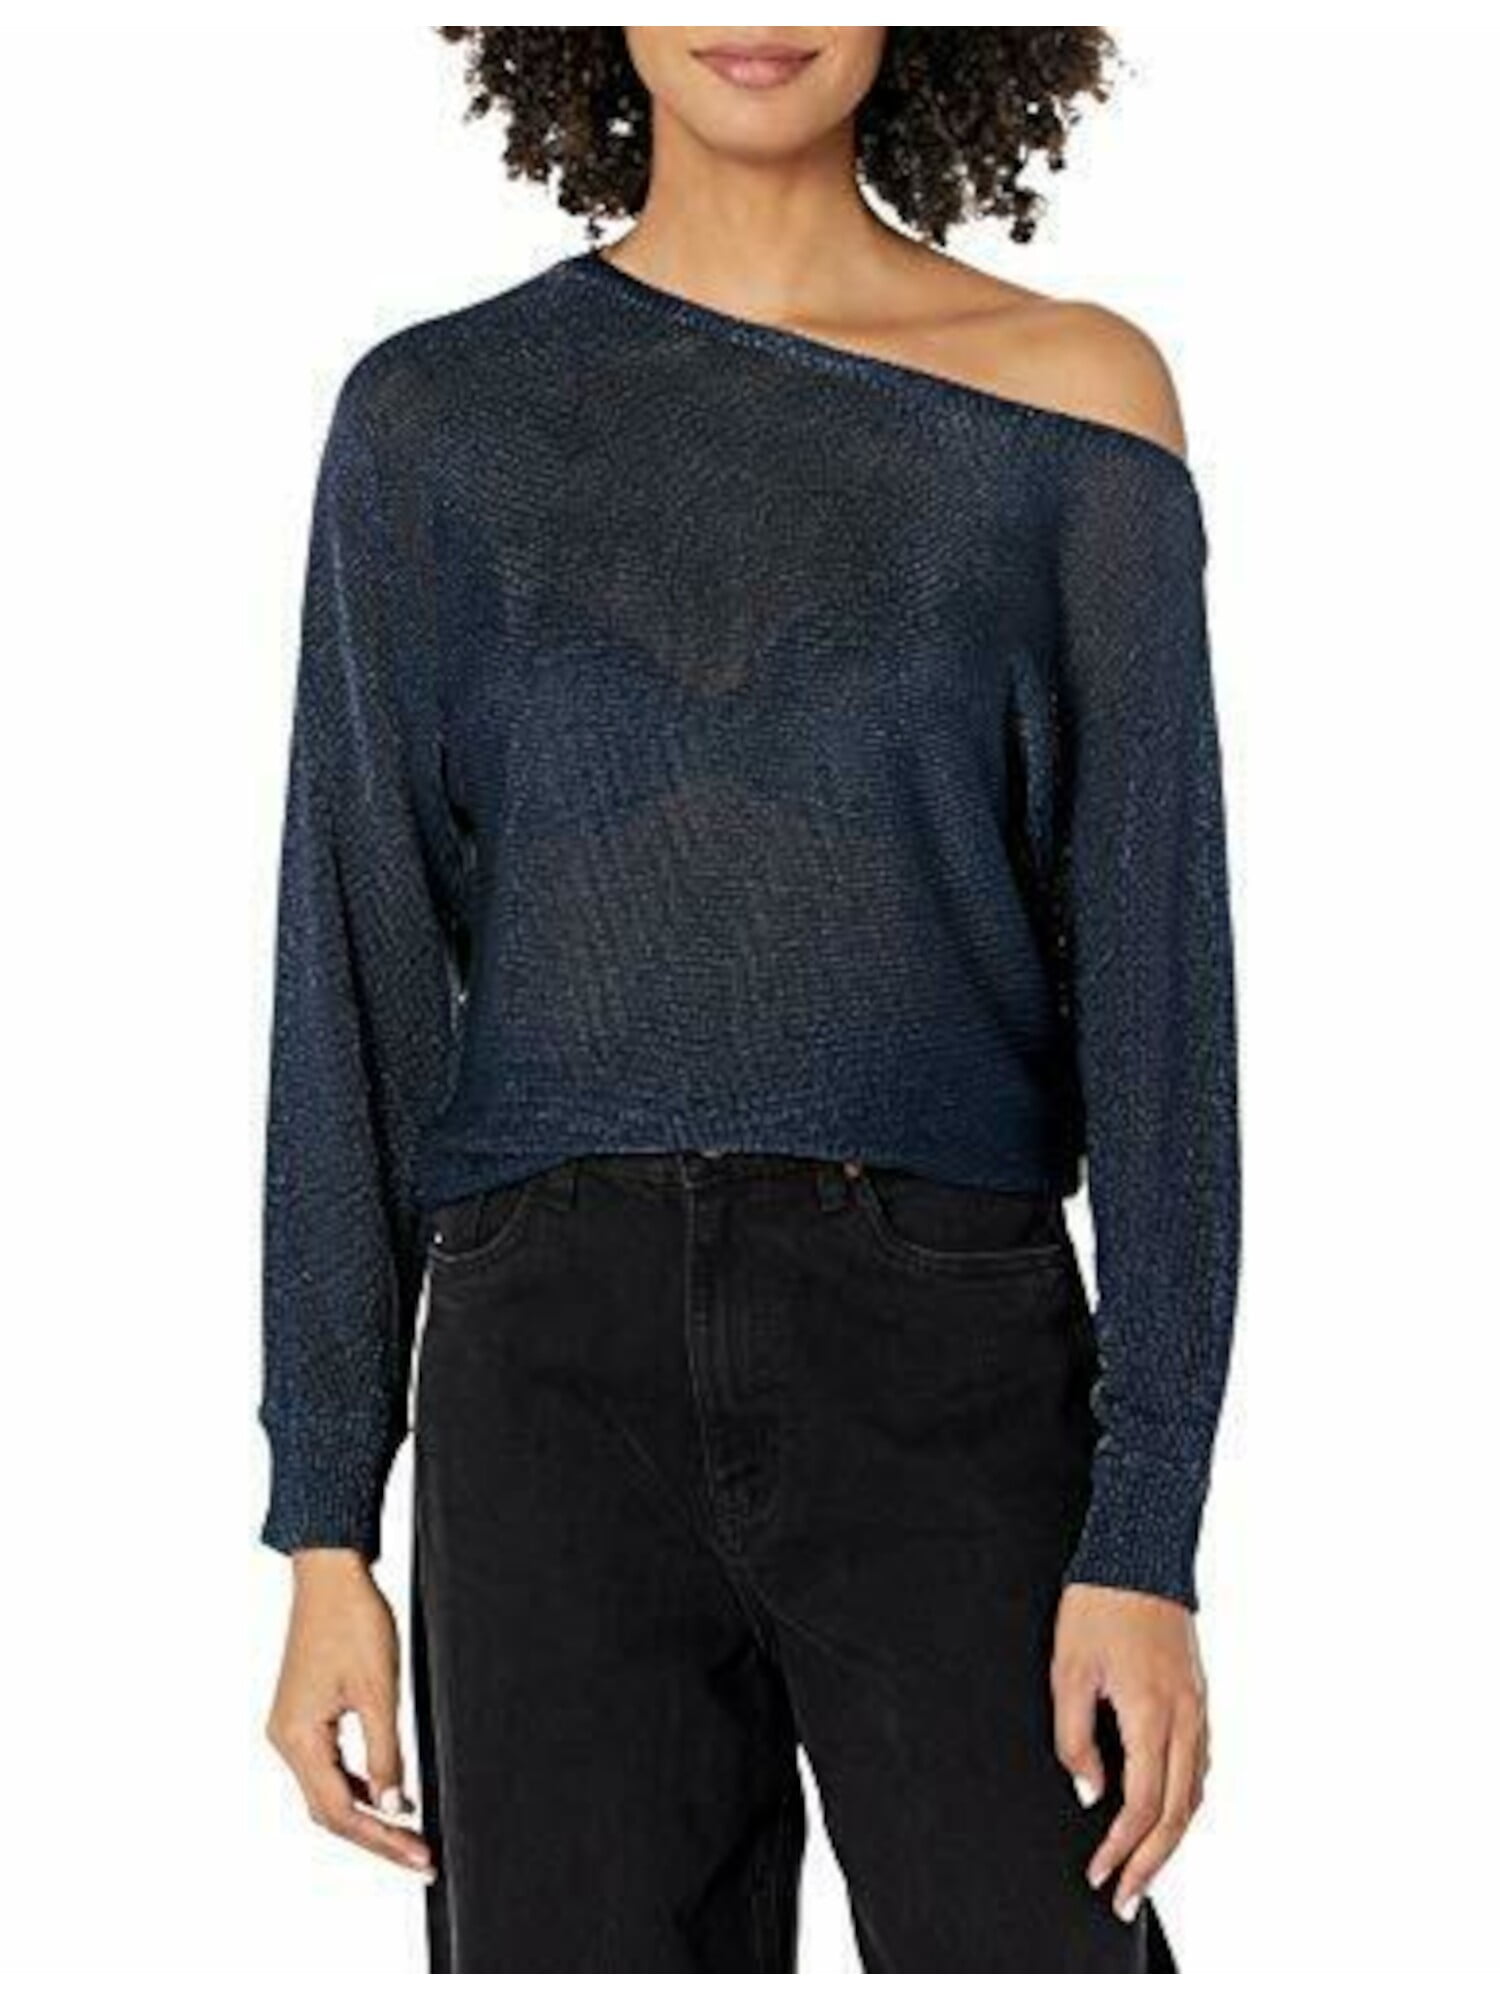 GUESS Womens Navy Knit Long Sleeve Scoop Neck Sweater XL - Walmart.com